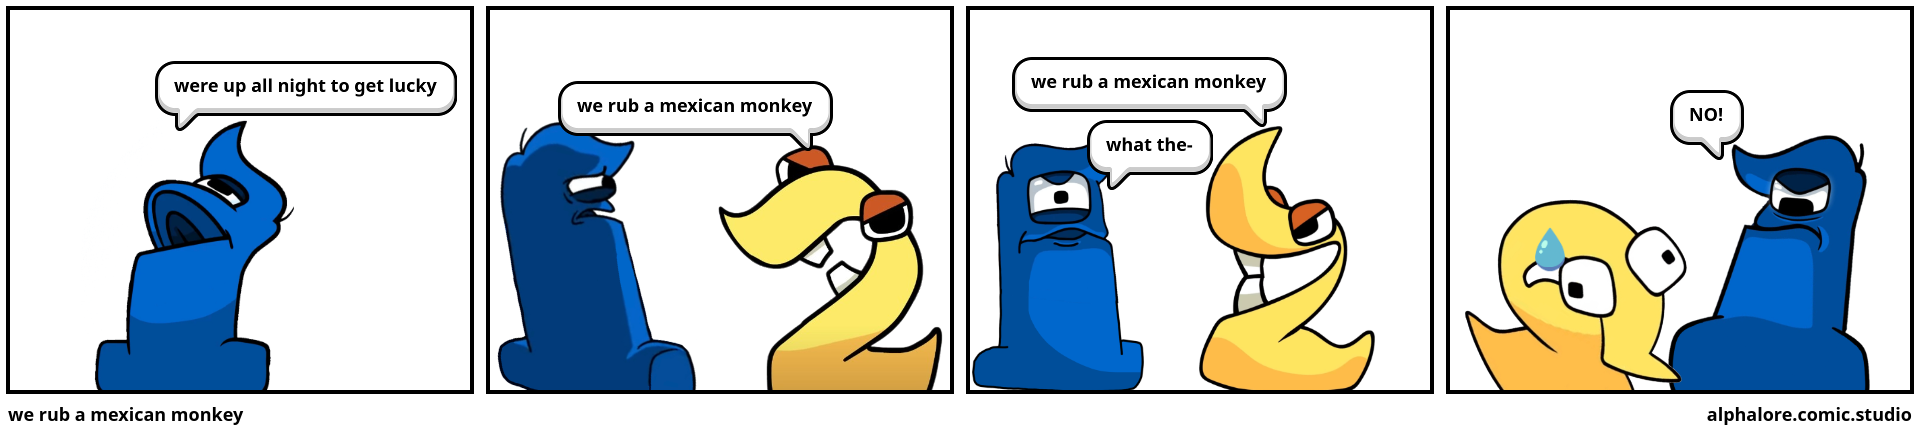 we rub a mexican monkey